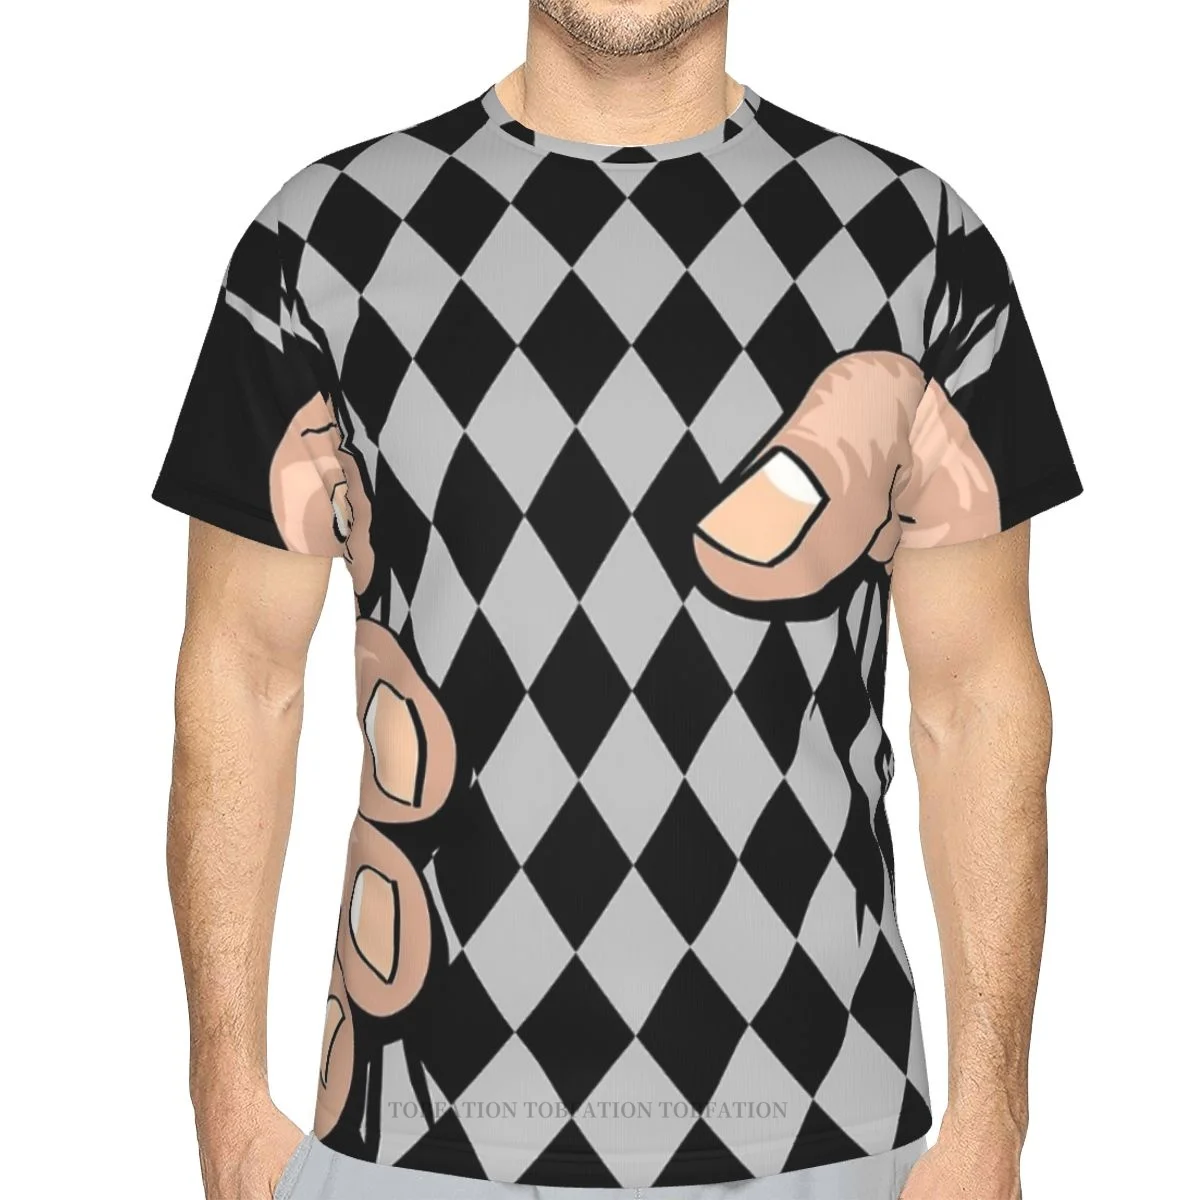 

Футболка мужская быстросохнущая в клетку, Полиэстеровая рубашка с 3D принтом, с большой ручкой, для занятий спортом на открытом воздухе